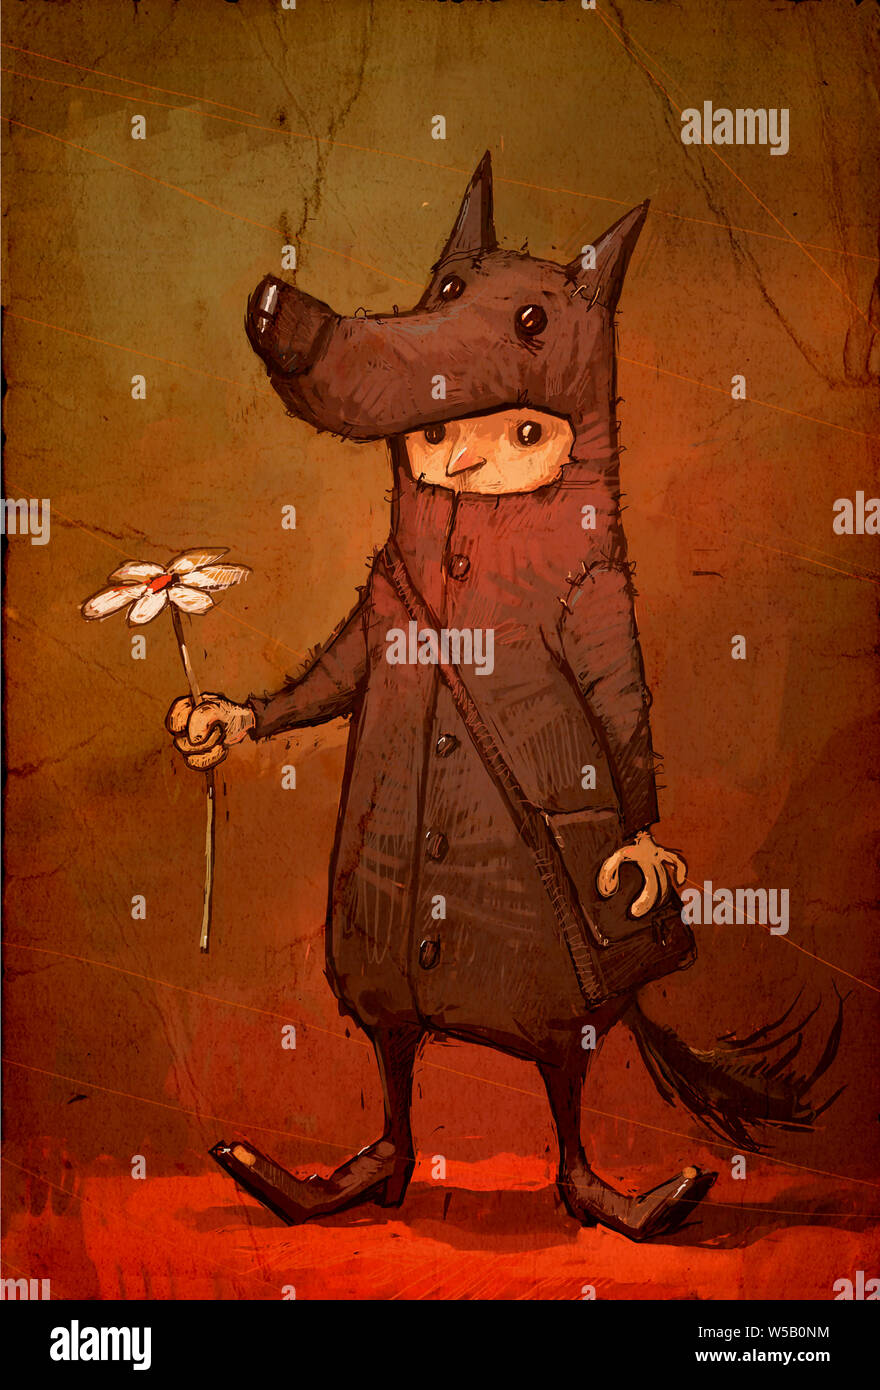 Illustration d'un personnage pour une maison de vacances. Image d'un garçon dans un costume de carnaval d'un loup en donnant une fleur. Illustration pour T-shirt et carte de vœux. Banque D'Images